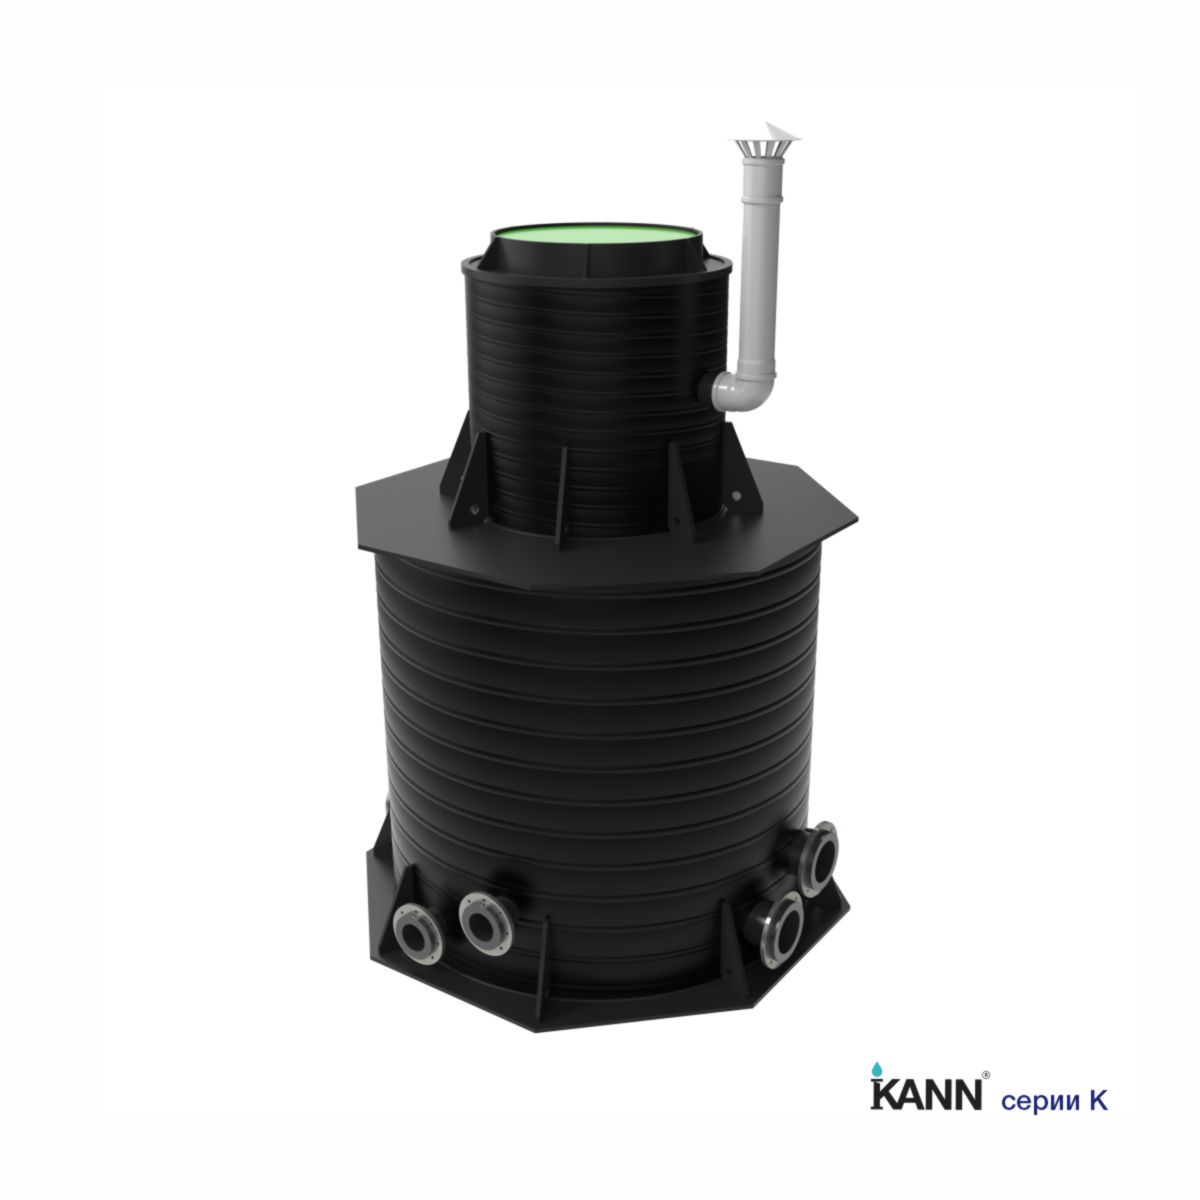 Колодец для водоснабжения KANN серии K